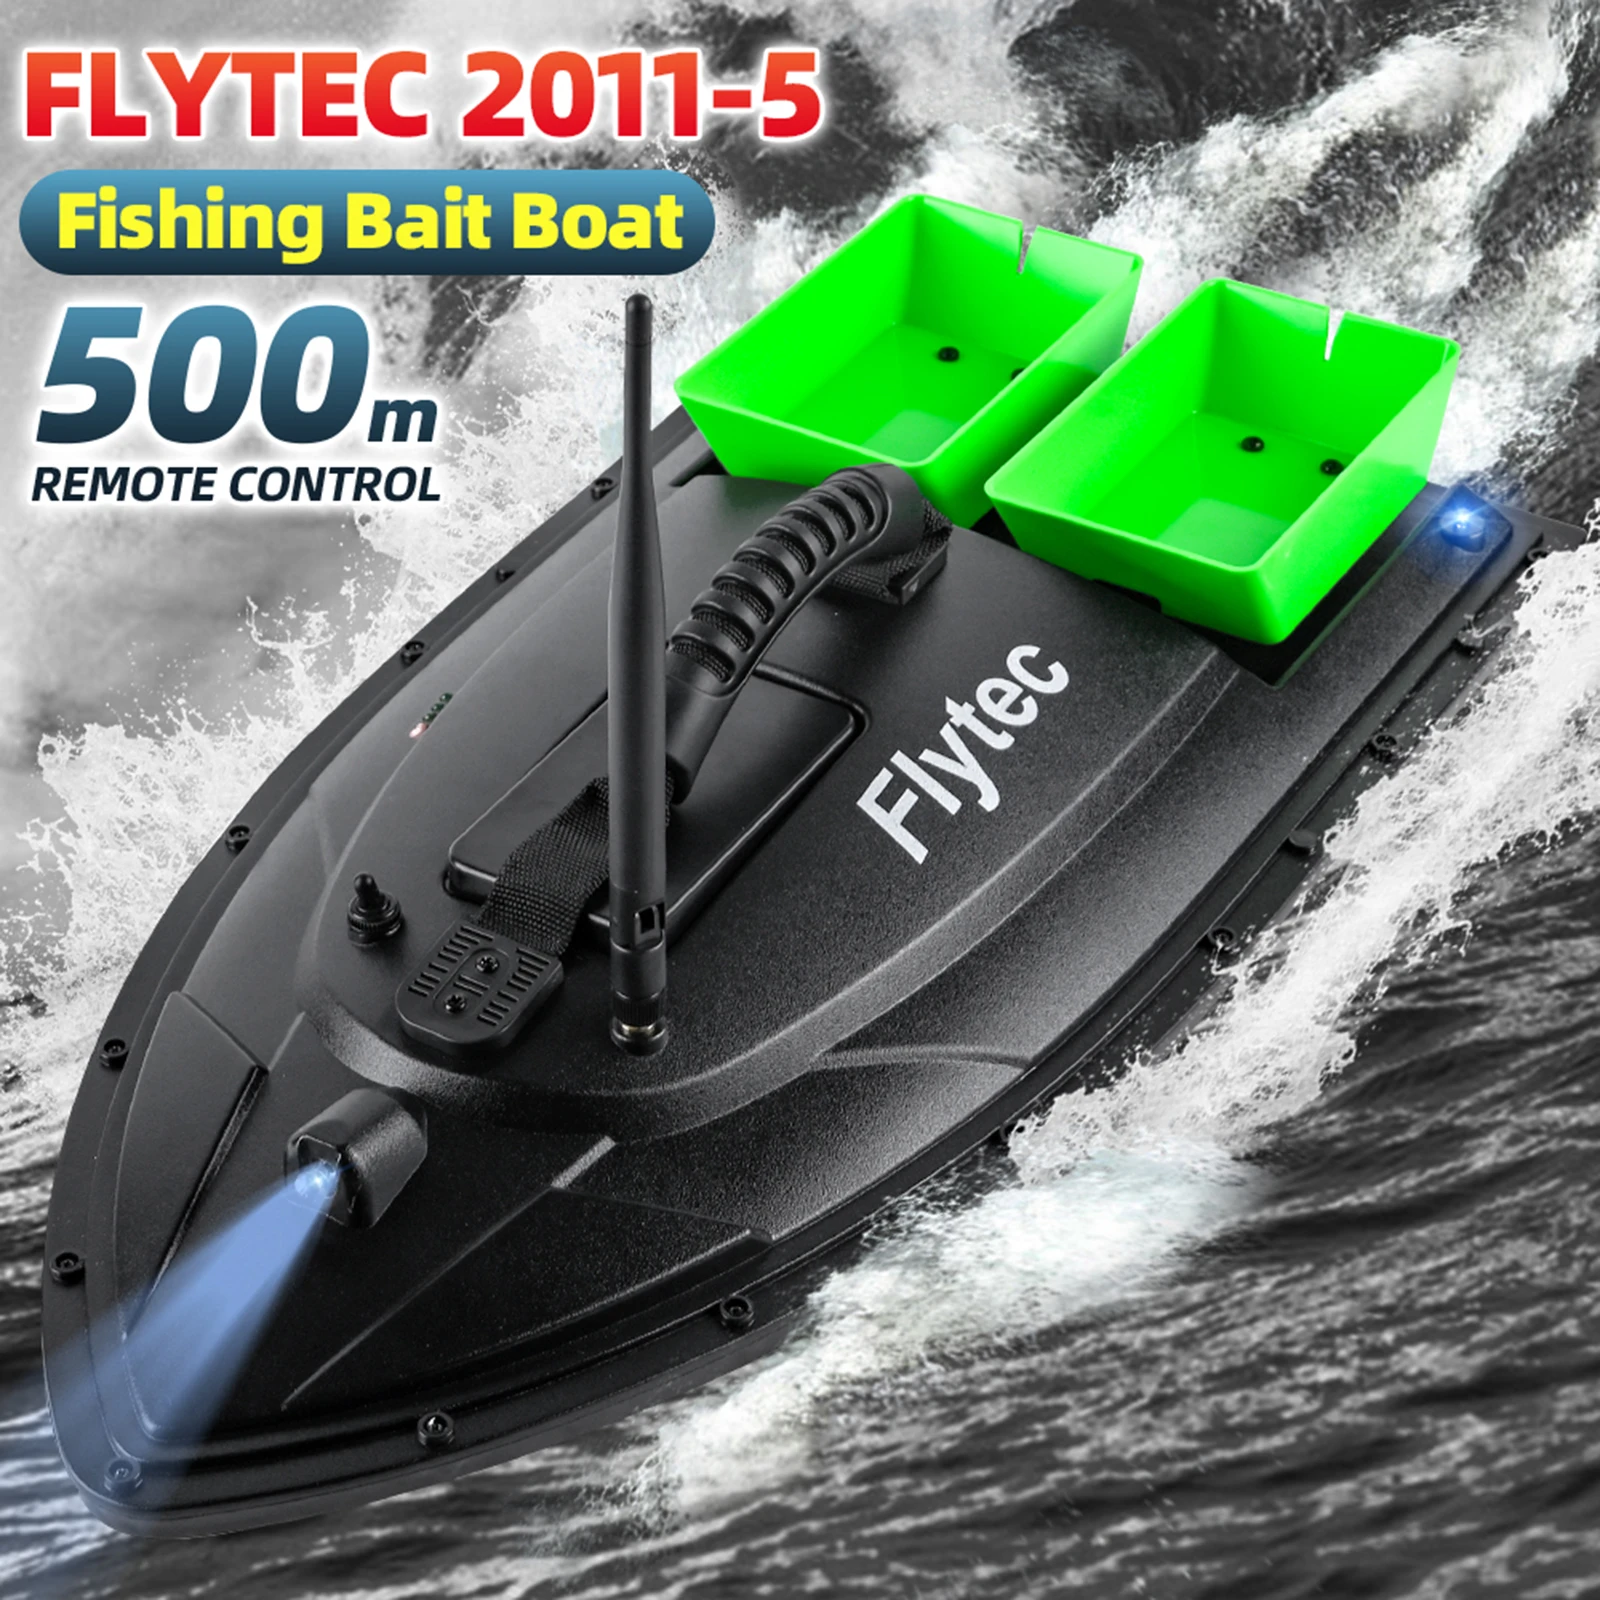 

Радиоуправляемая лодка Flytec 2011-5, рыболокатор, лодка для поиска рыбы 5,4 км/ч 1,5 кг, загрузка 500 м, рыболовная приманка с дистанционным управлени...